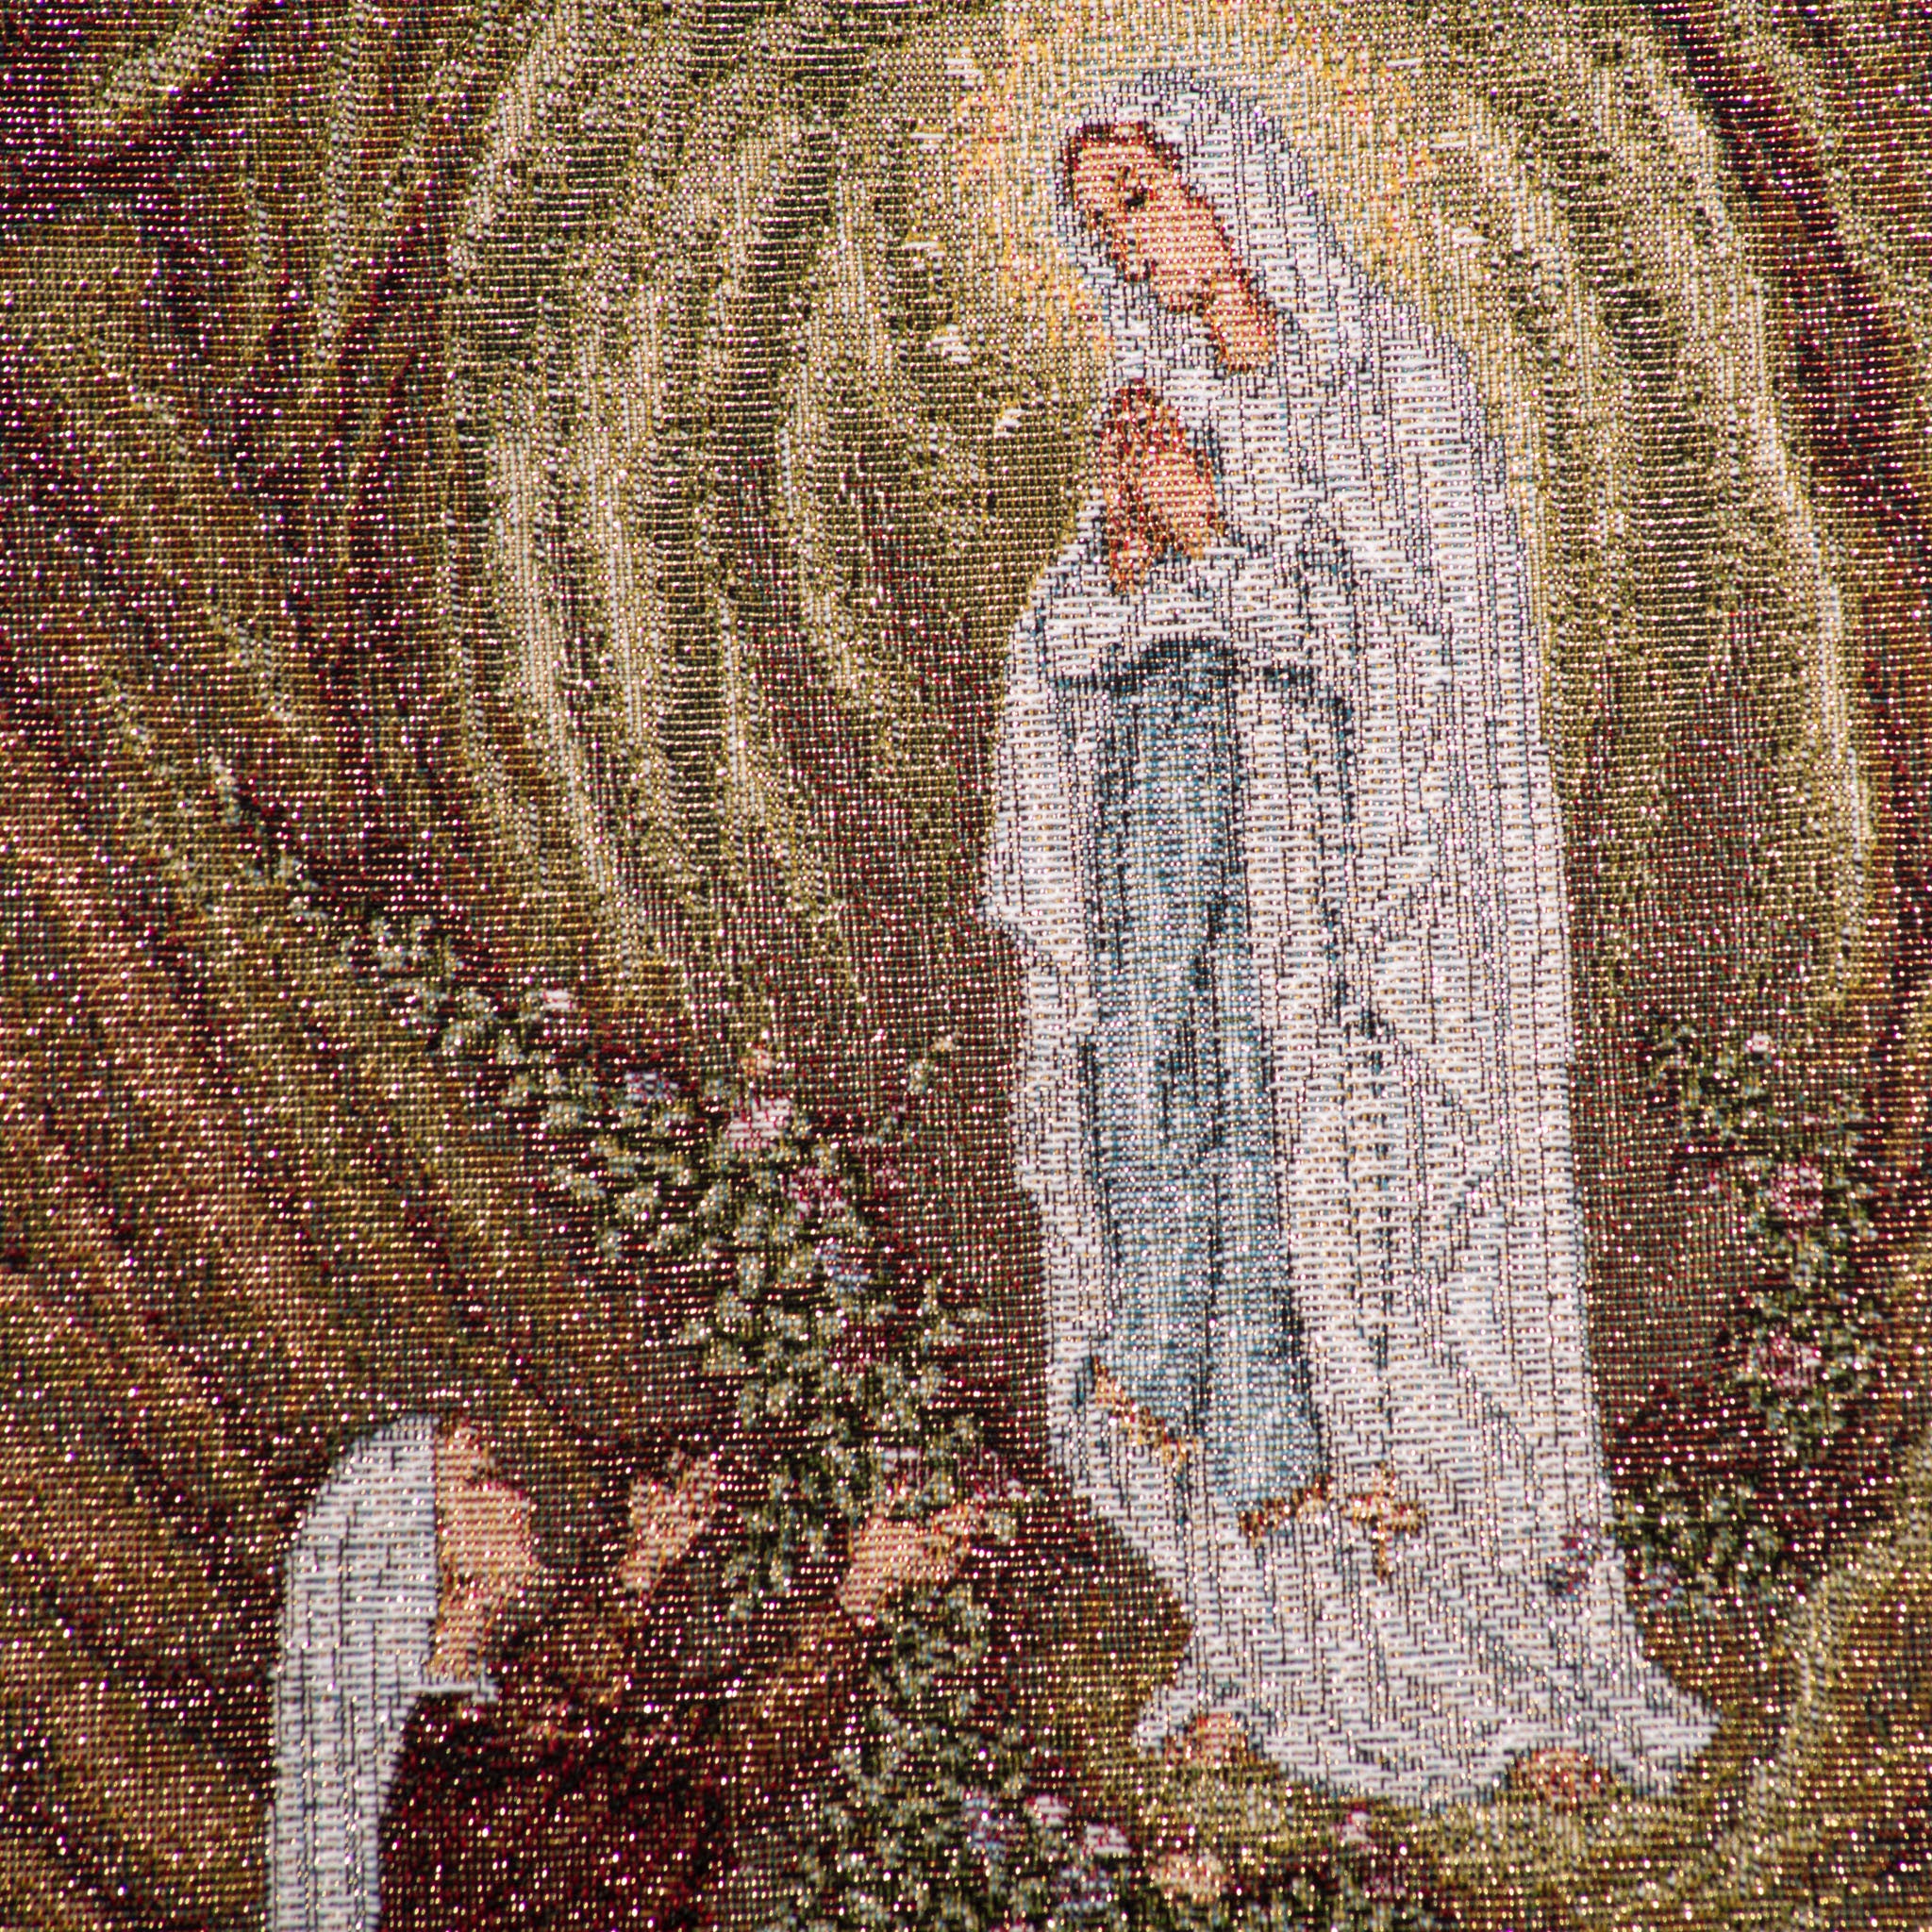 Arazzo della Vergine di Lourdes grotta con Santa Bernadette - Galleria Mariana